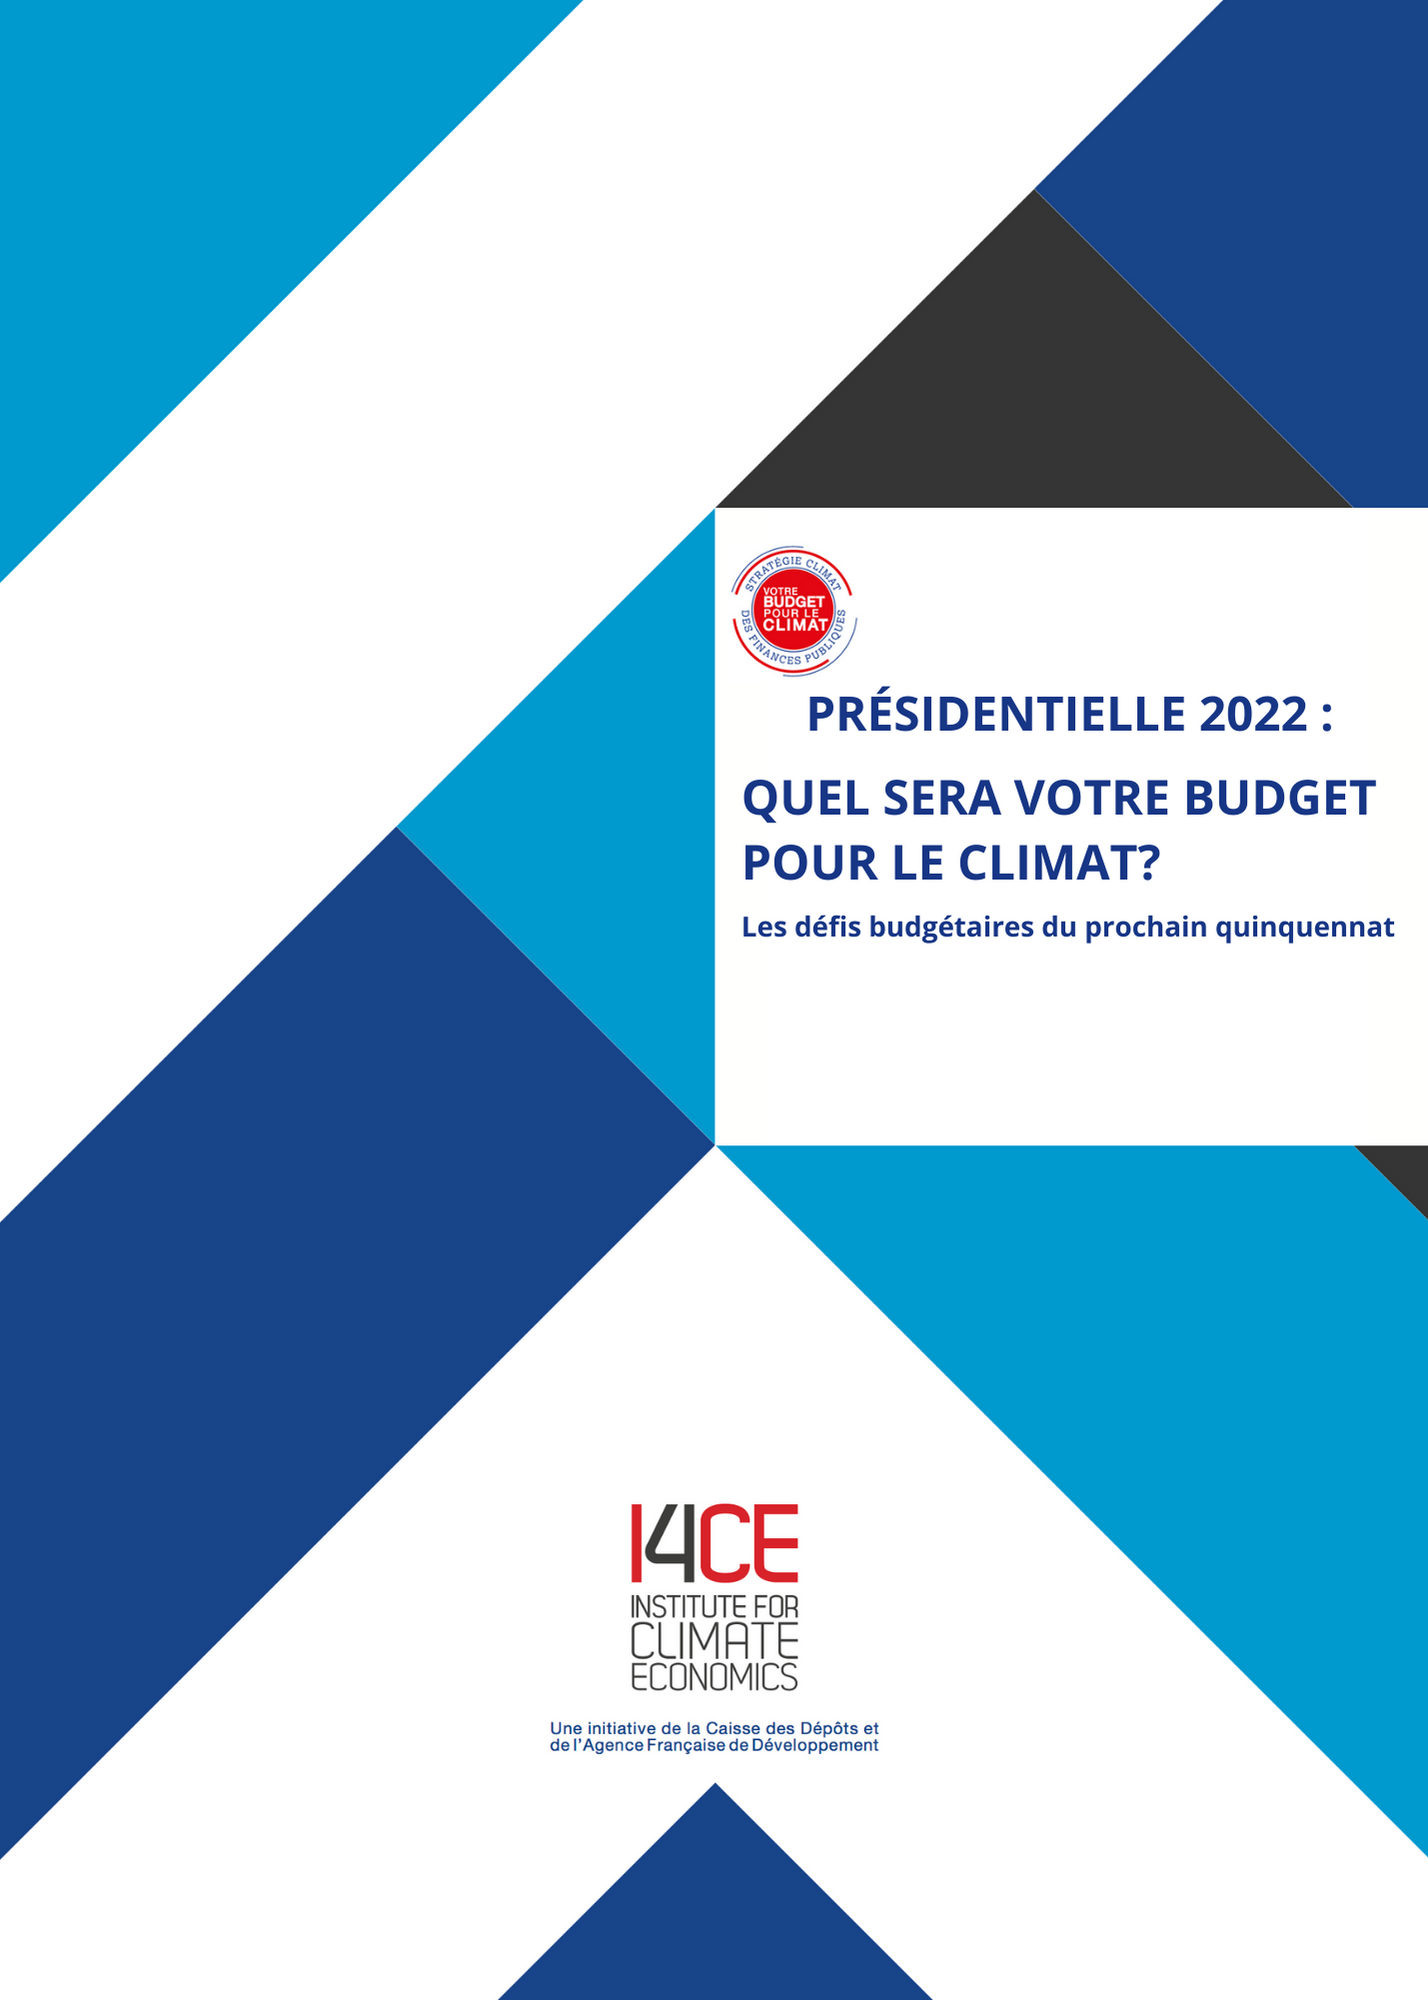 Présidentielle 2022 : Les défis budgétaires du prochain quinquennat - I4CE